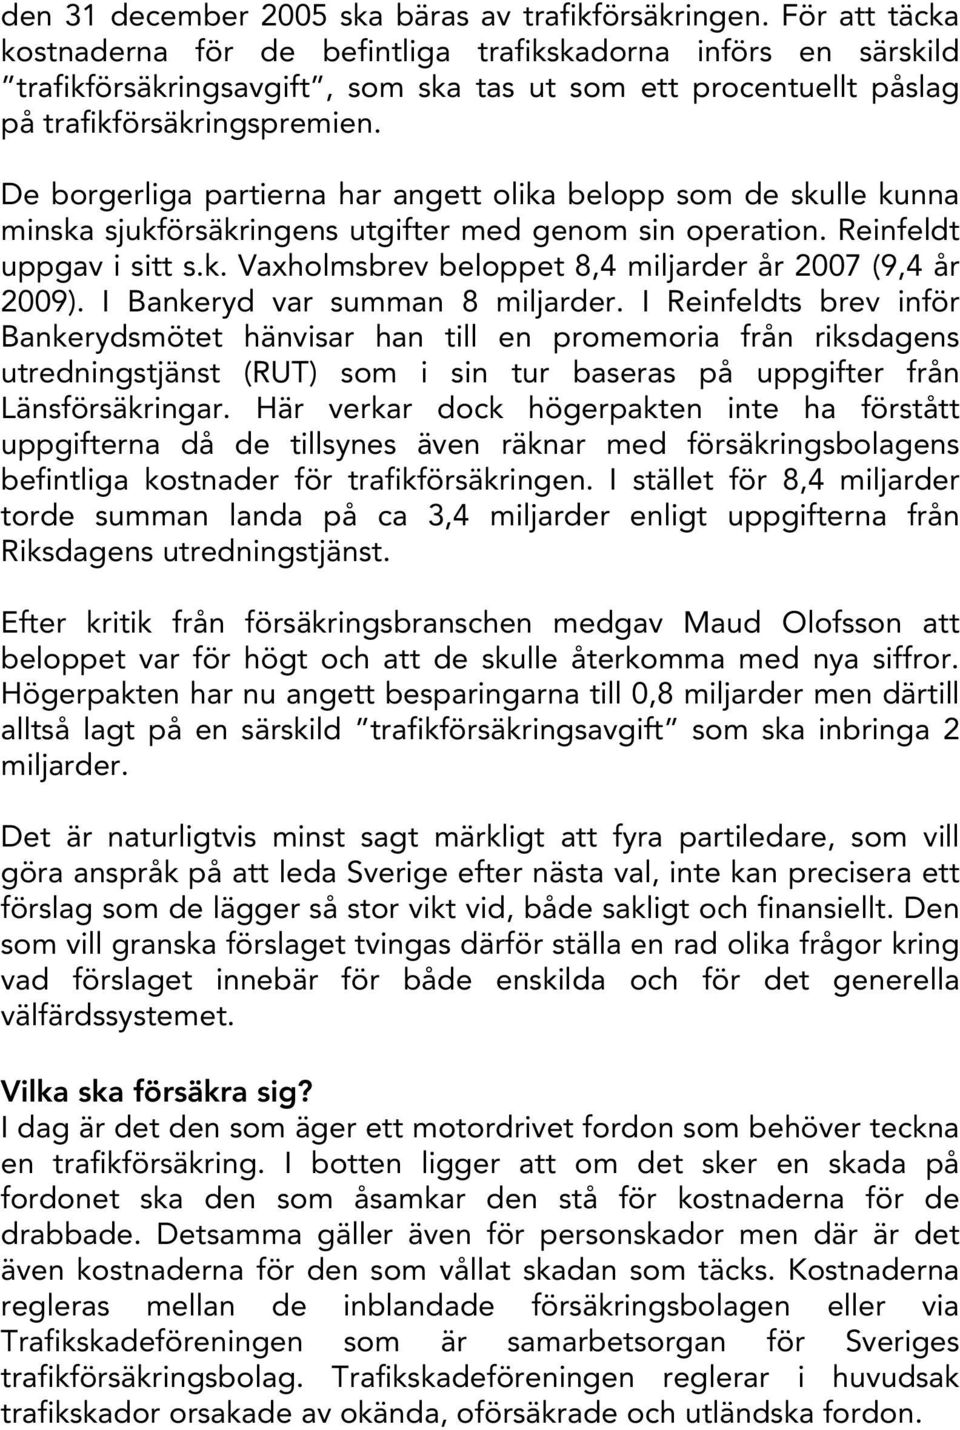 De borgerliga partierna har angett olika belopp som de skulle kunna minska sjukförsäkringens utgifter med genom sin operation. Reinfeldt uppgav i sitt s.k. Vaxholmsbrev beloppet 8,4 miljarder år 2007 (9,4 år 2009).